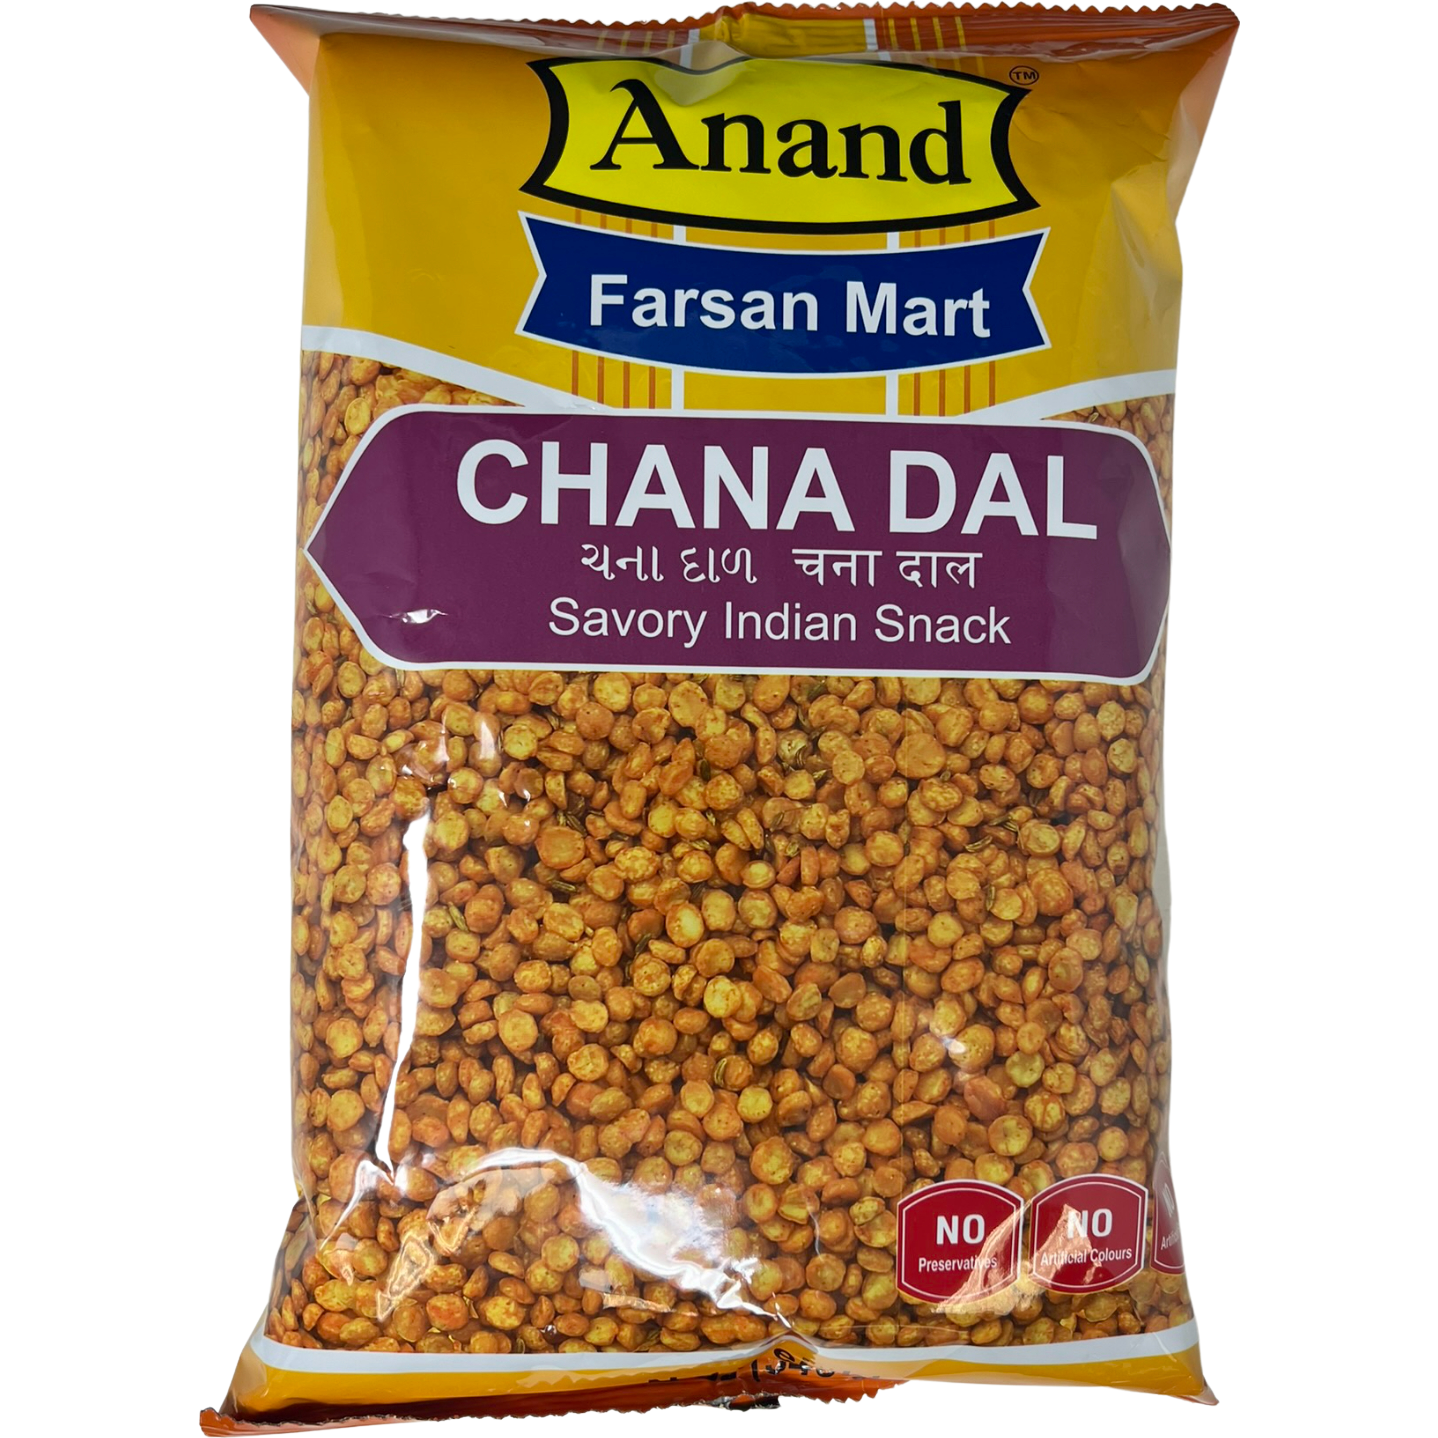 Anand Chana Dal - 340 Gm (12 Oz)